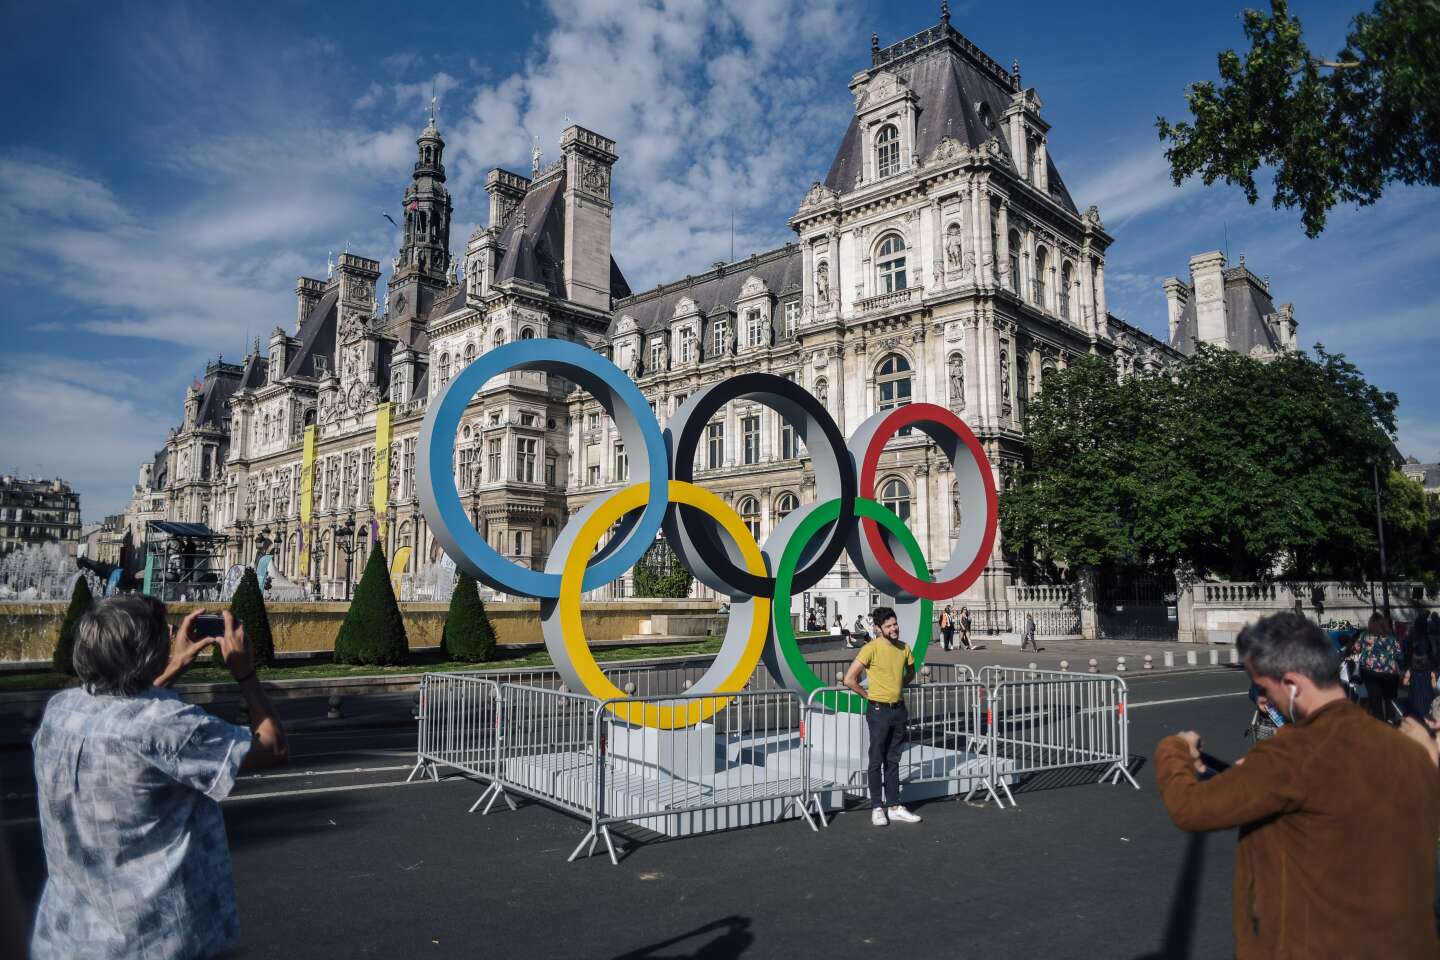 Les nouveaux sports aux Jeux Olympiques de Paris 2024